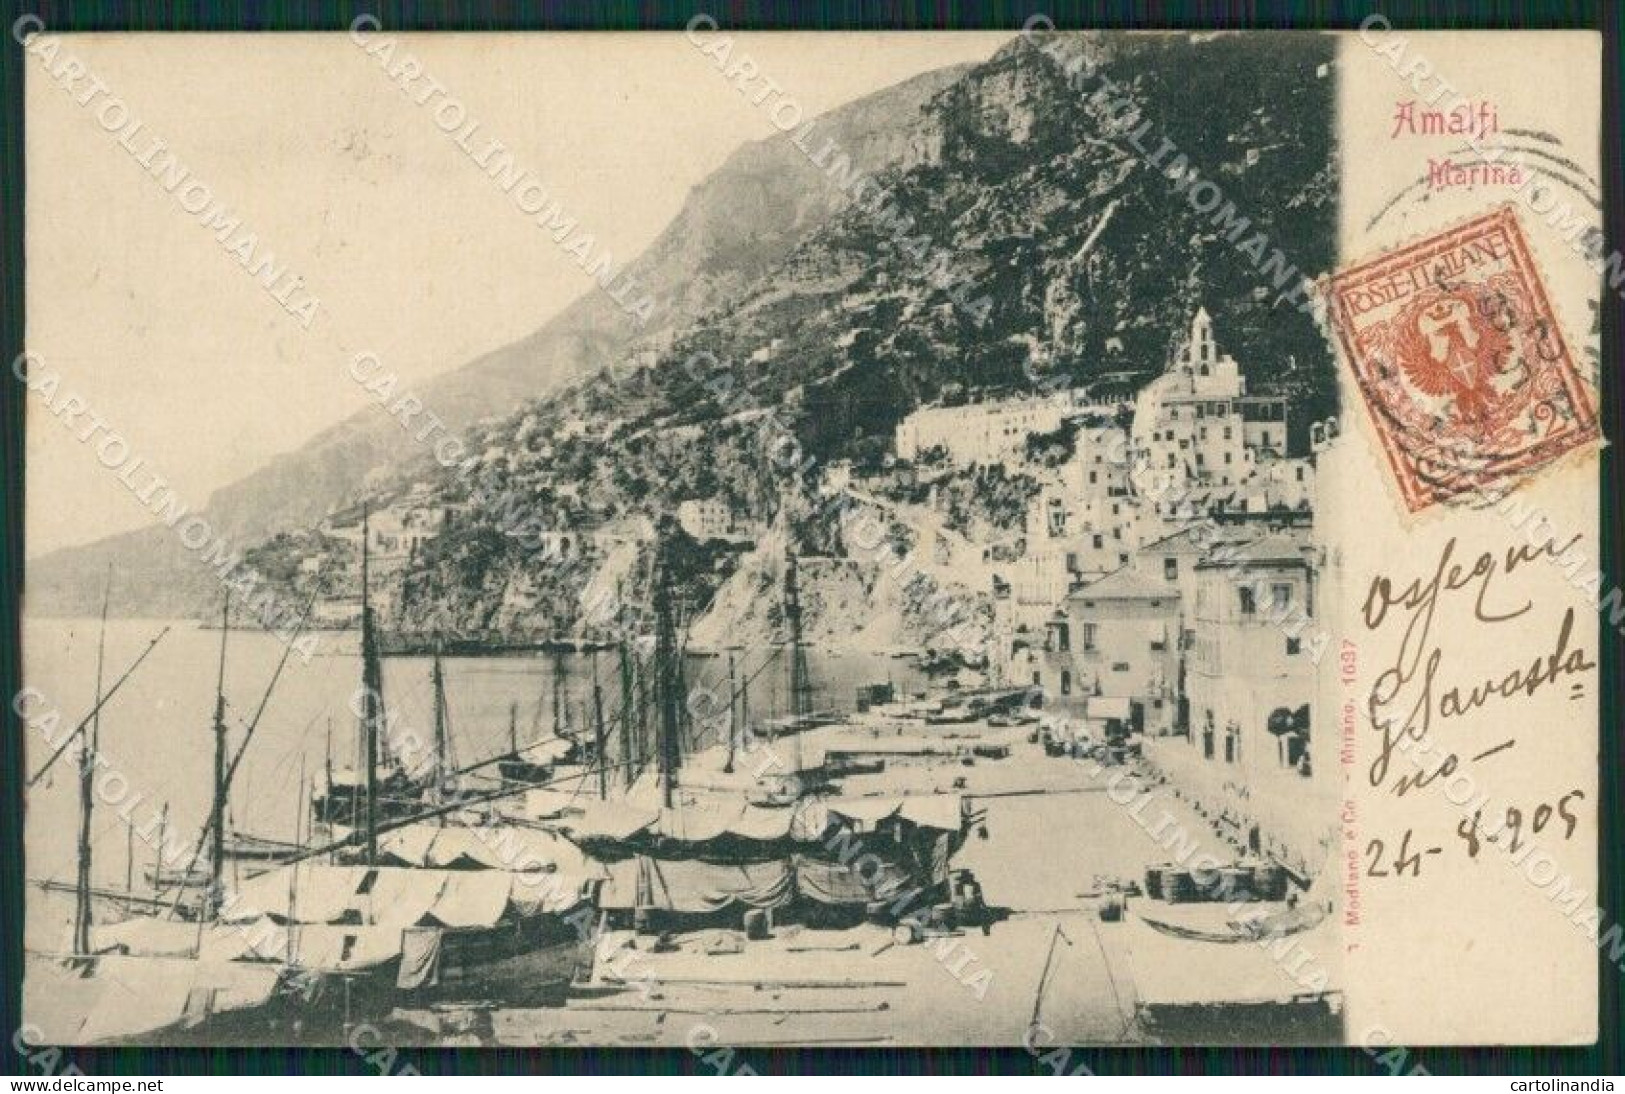 Salerno Amalfi Cartolina KV3773 - Salerno